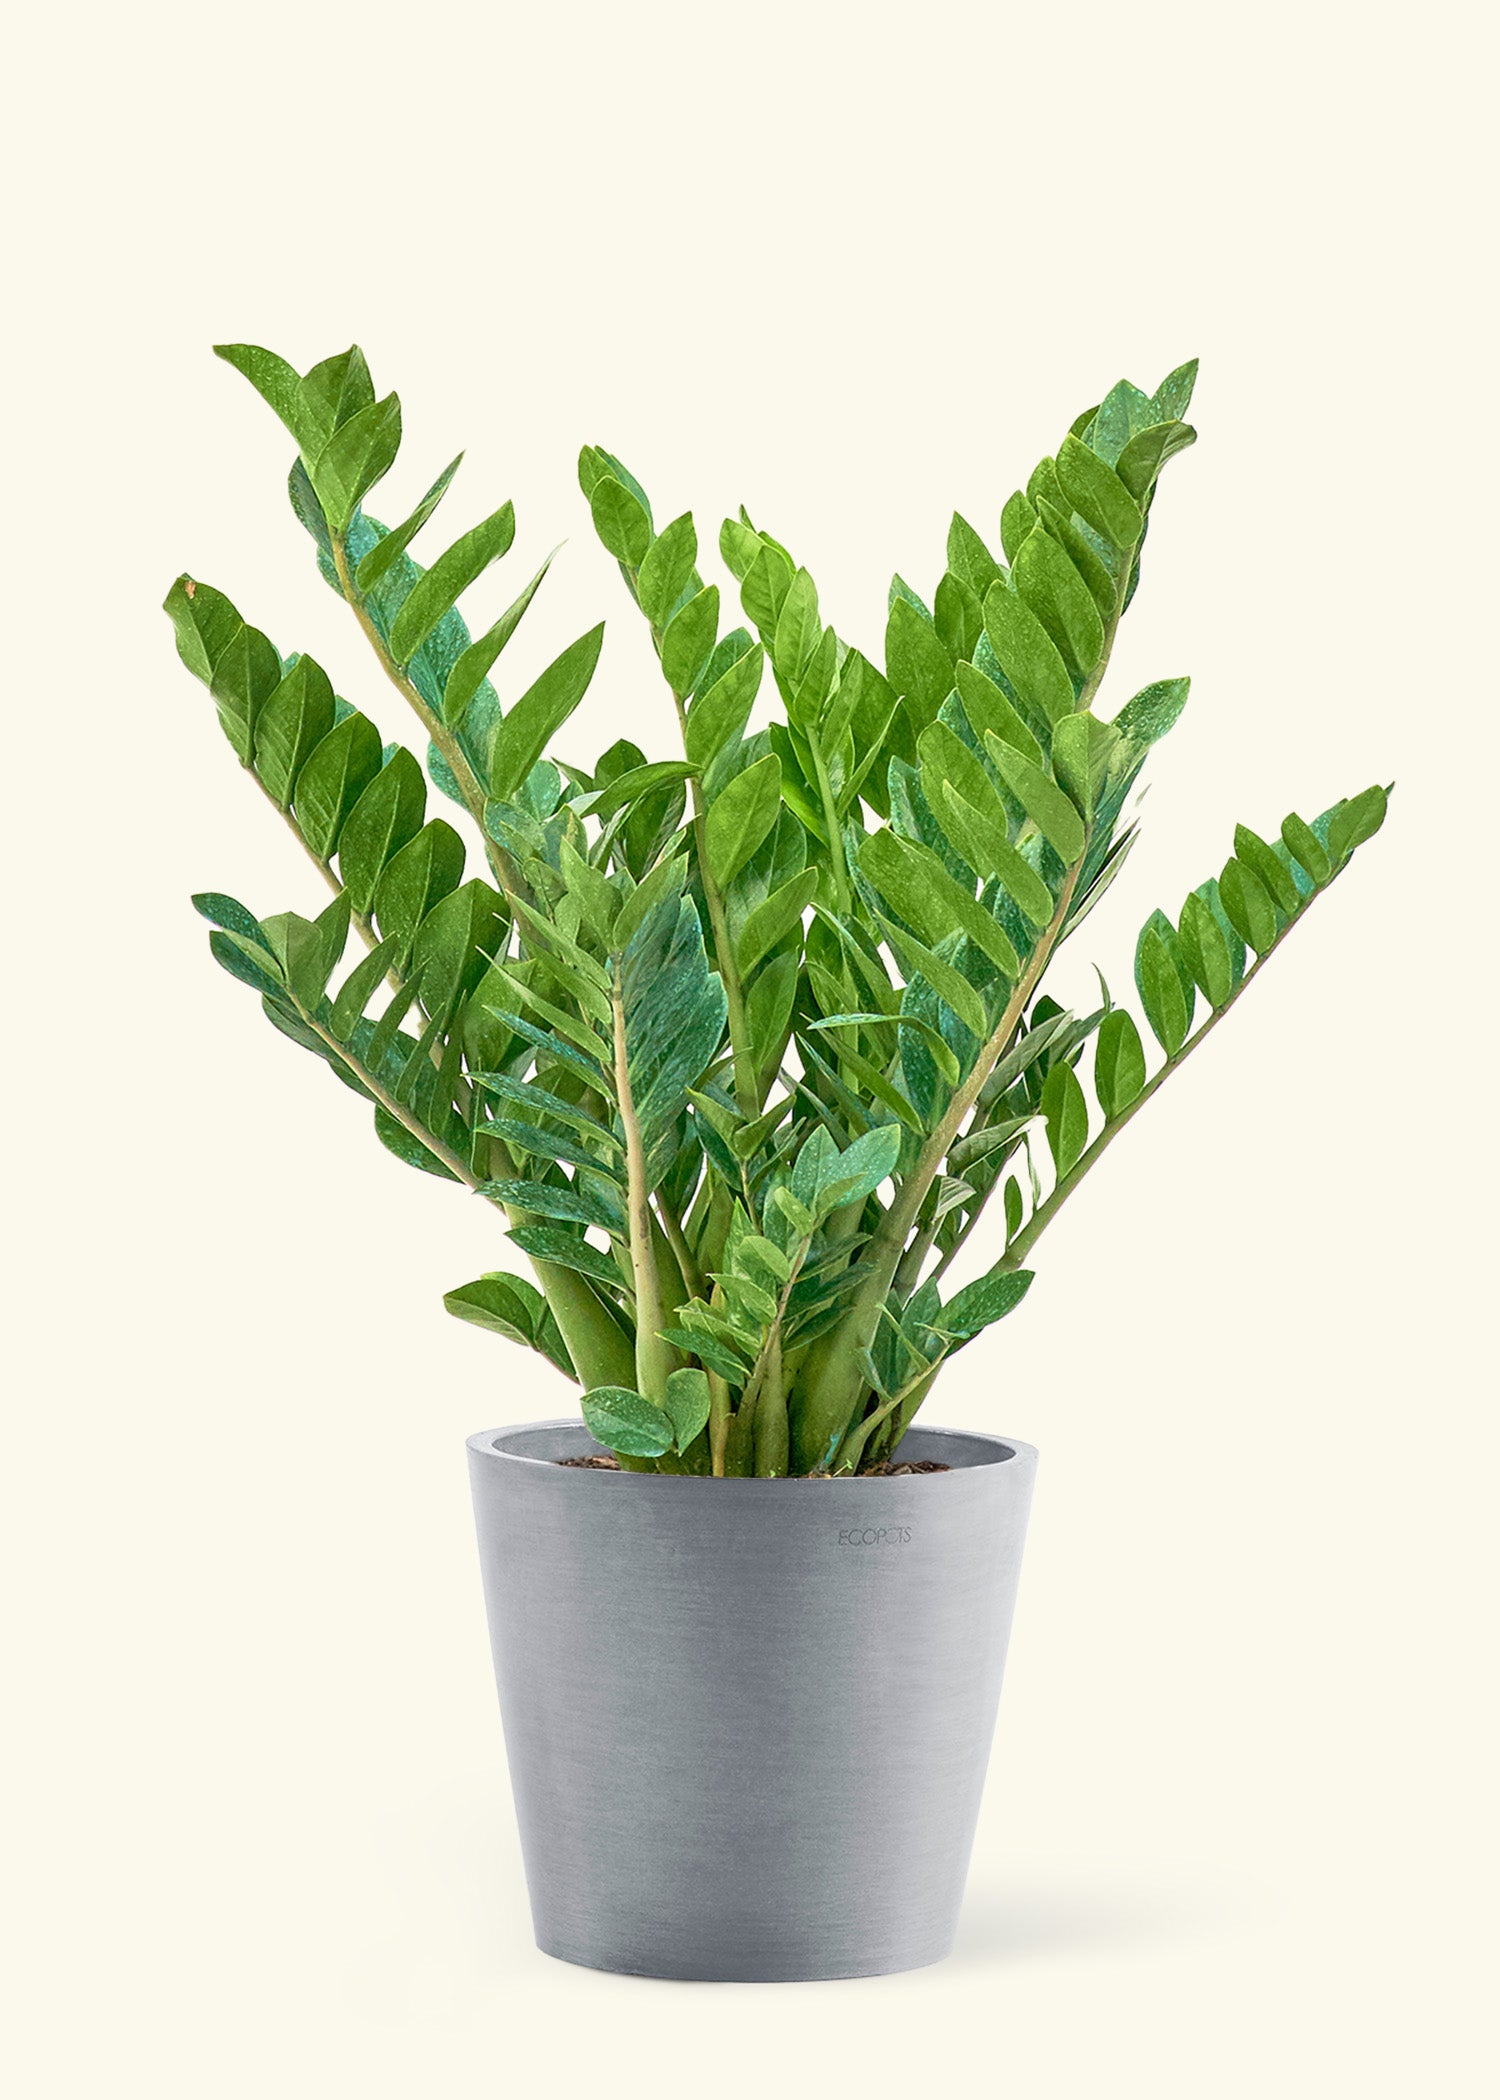 10" Large ZZ Plant (Zamioculcas zamiifolia) in a gray stone pot.